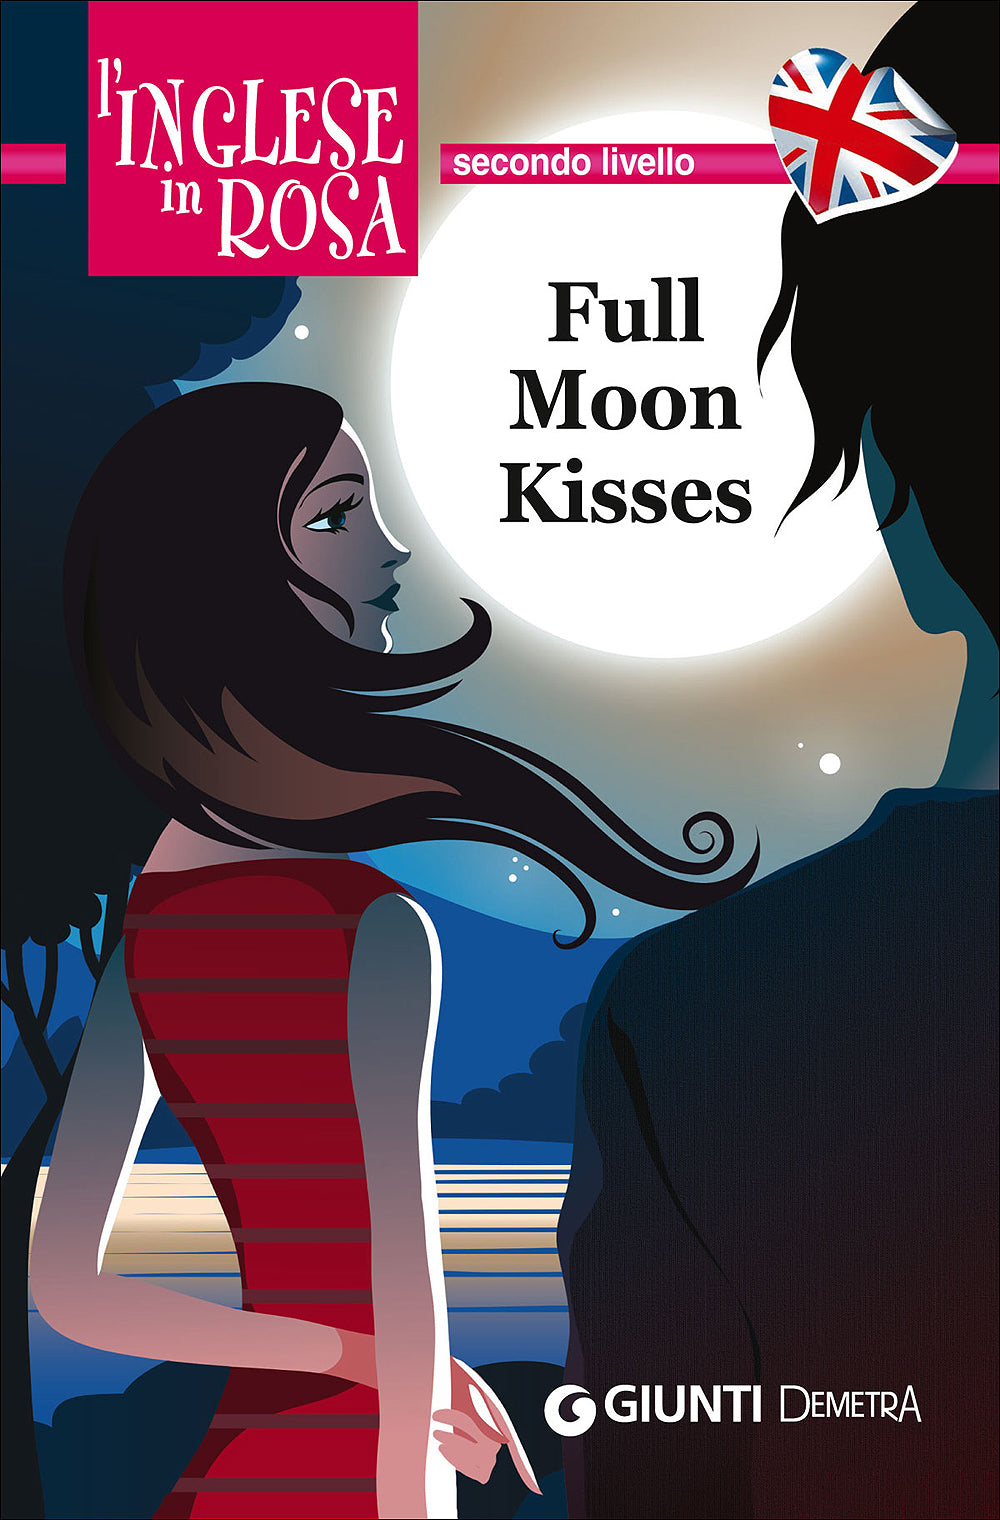 Full Moon Kisses::Le storie che migliorano il tuo inglese - Secondo livello